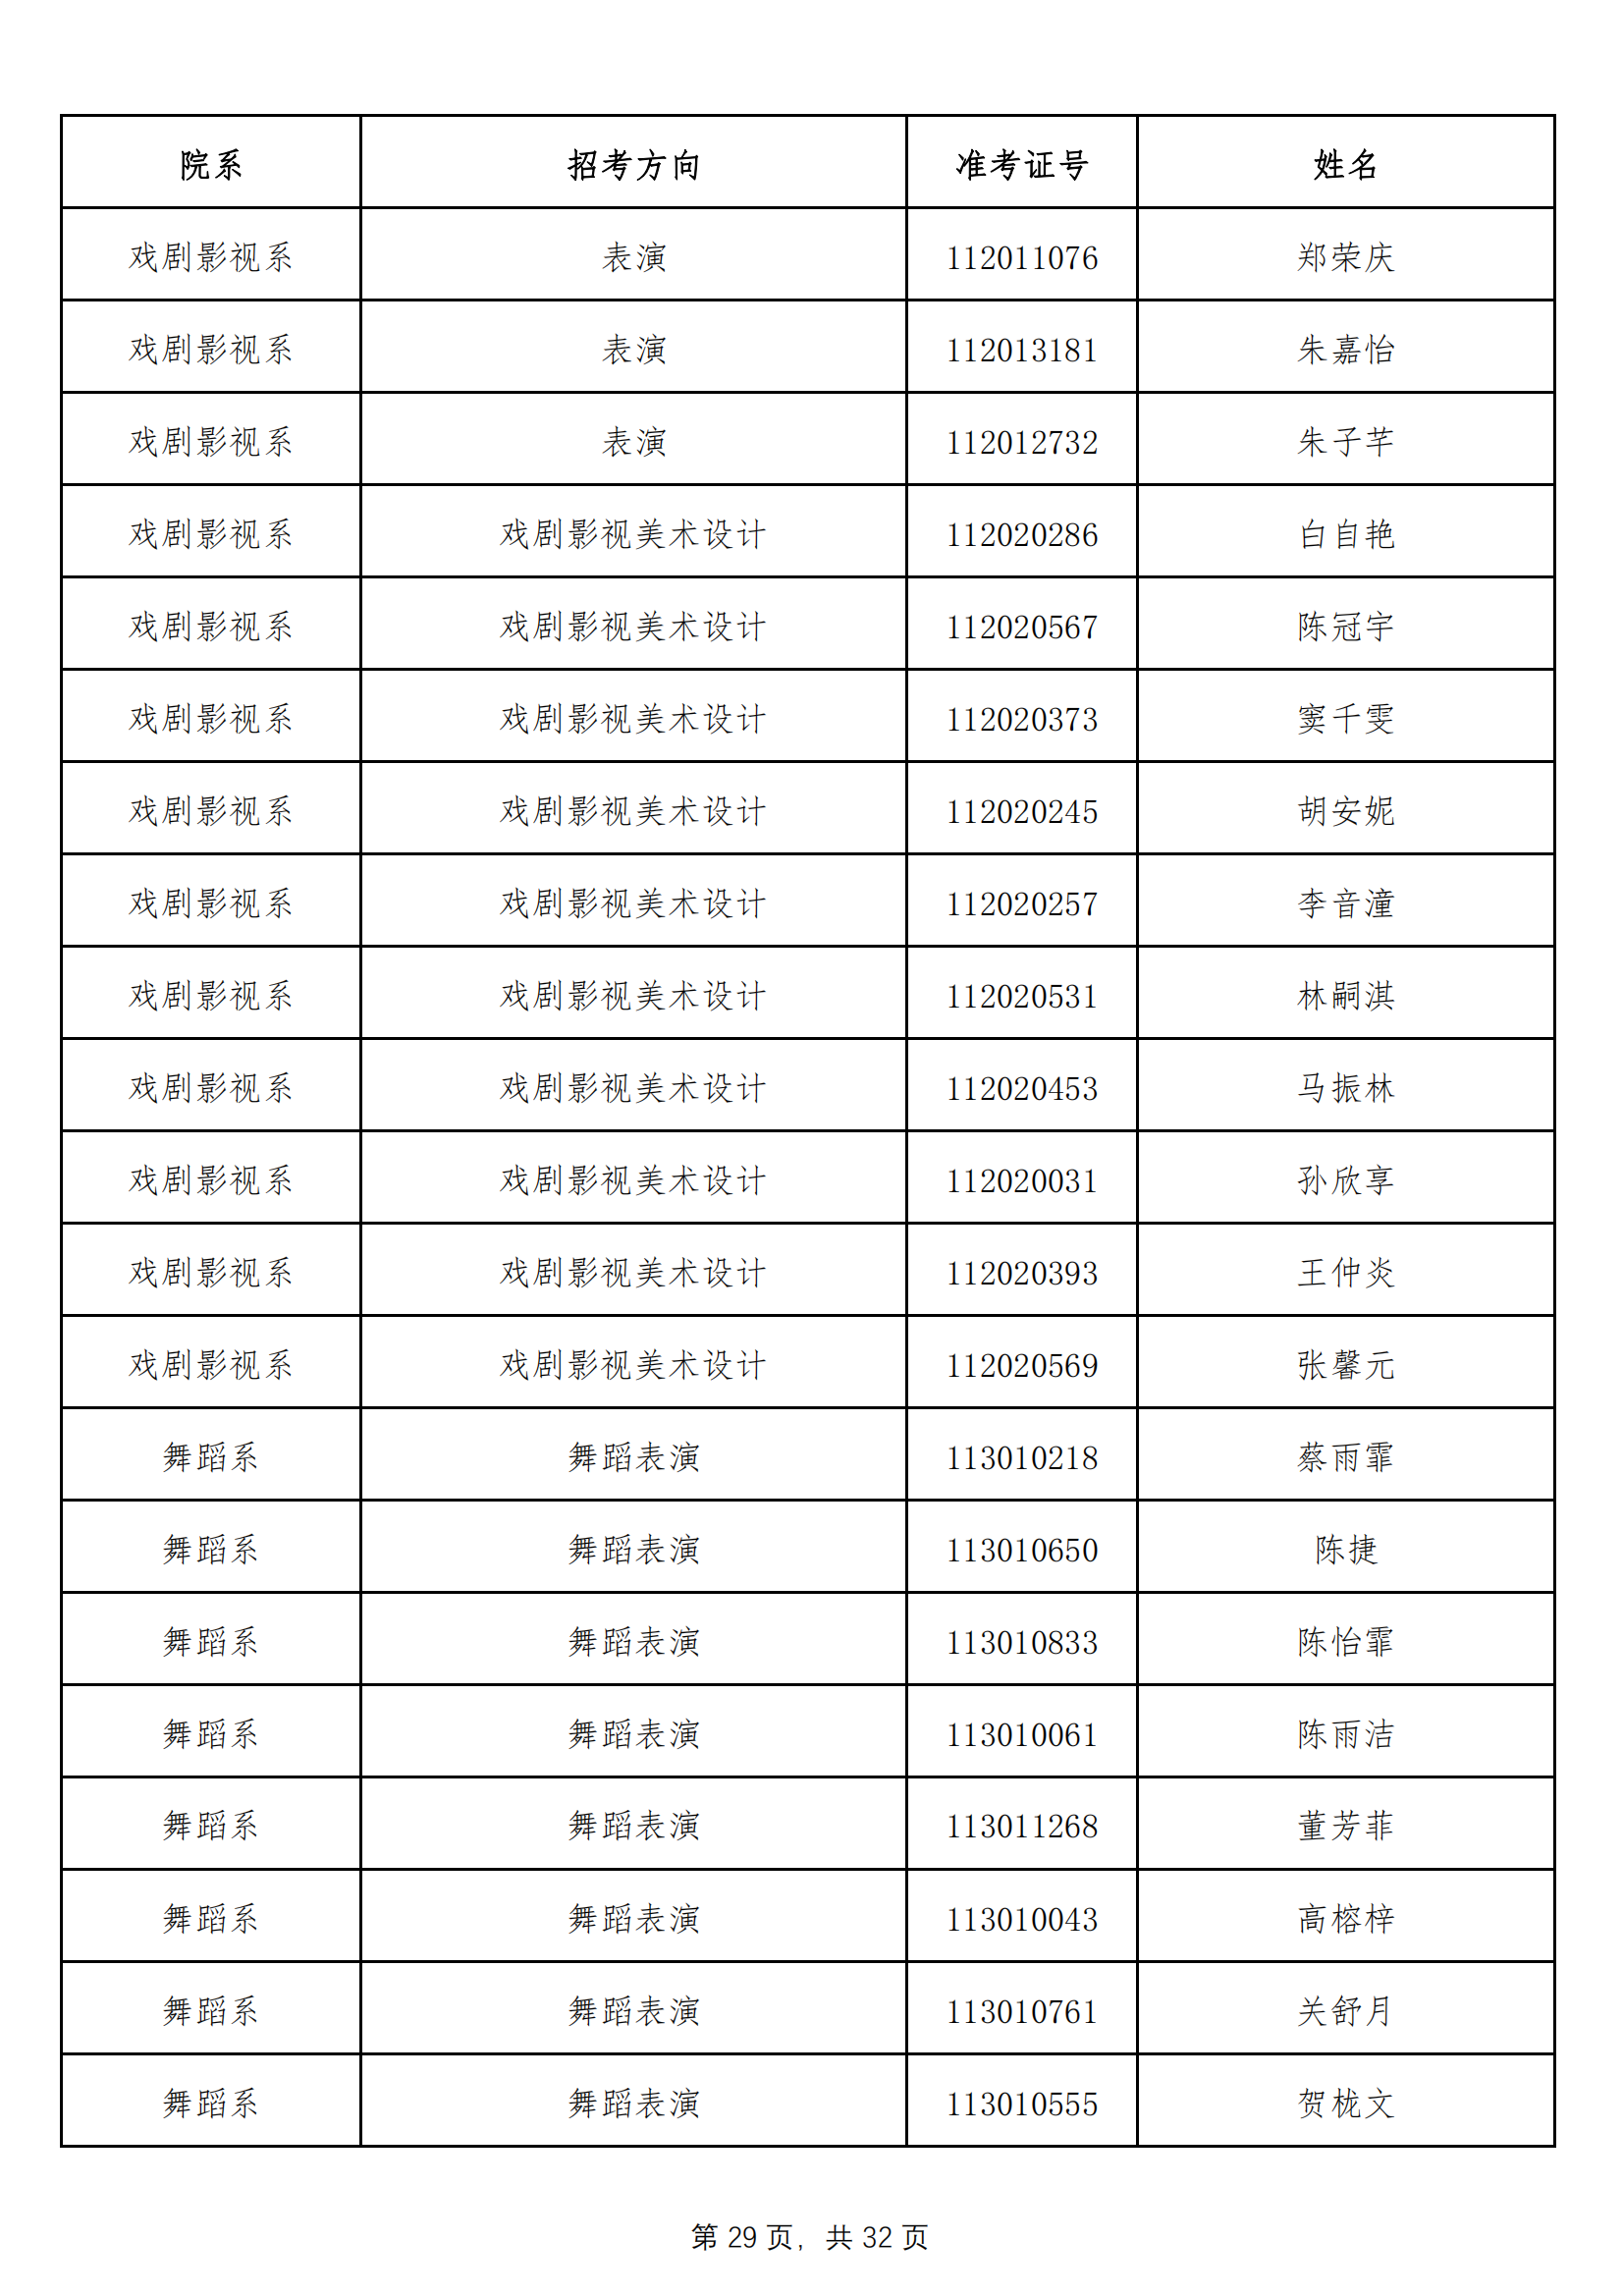 天津音乐学院2022年本科招生拟录取名单 （除上海考生外）_28.png